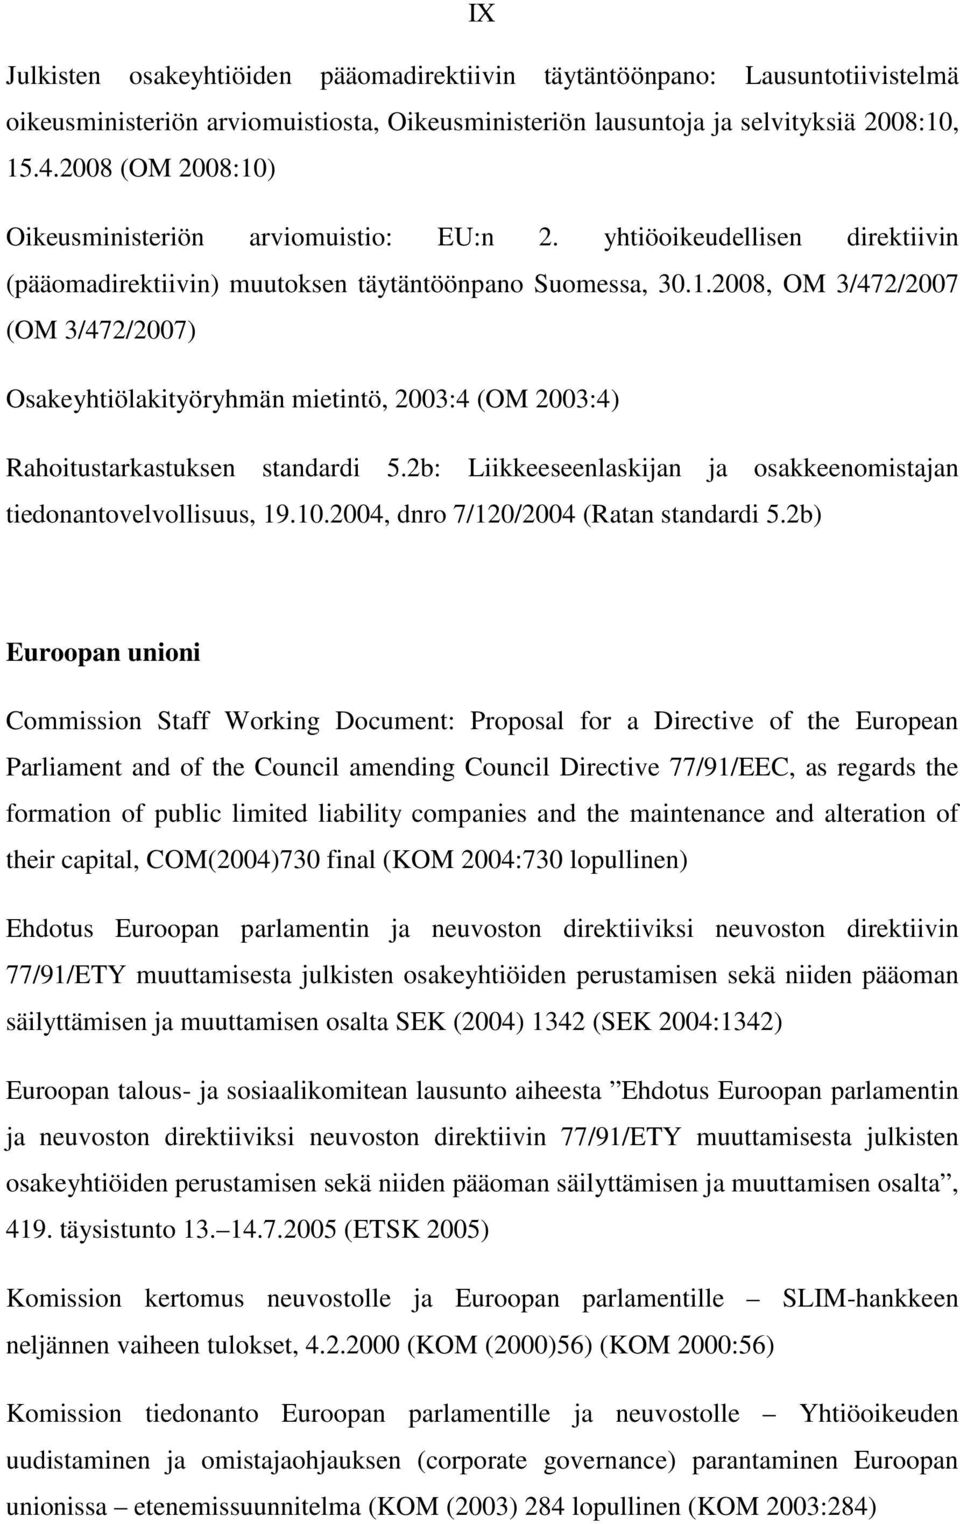 2b: Liikkeeseenlaskijan ja osakkeenomistajan tiedonantovelvollisuus, 19.10.2004, dnro 7/120/2004 (Ratan standardi 5.